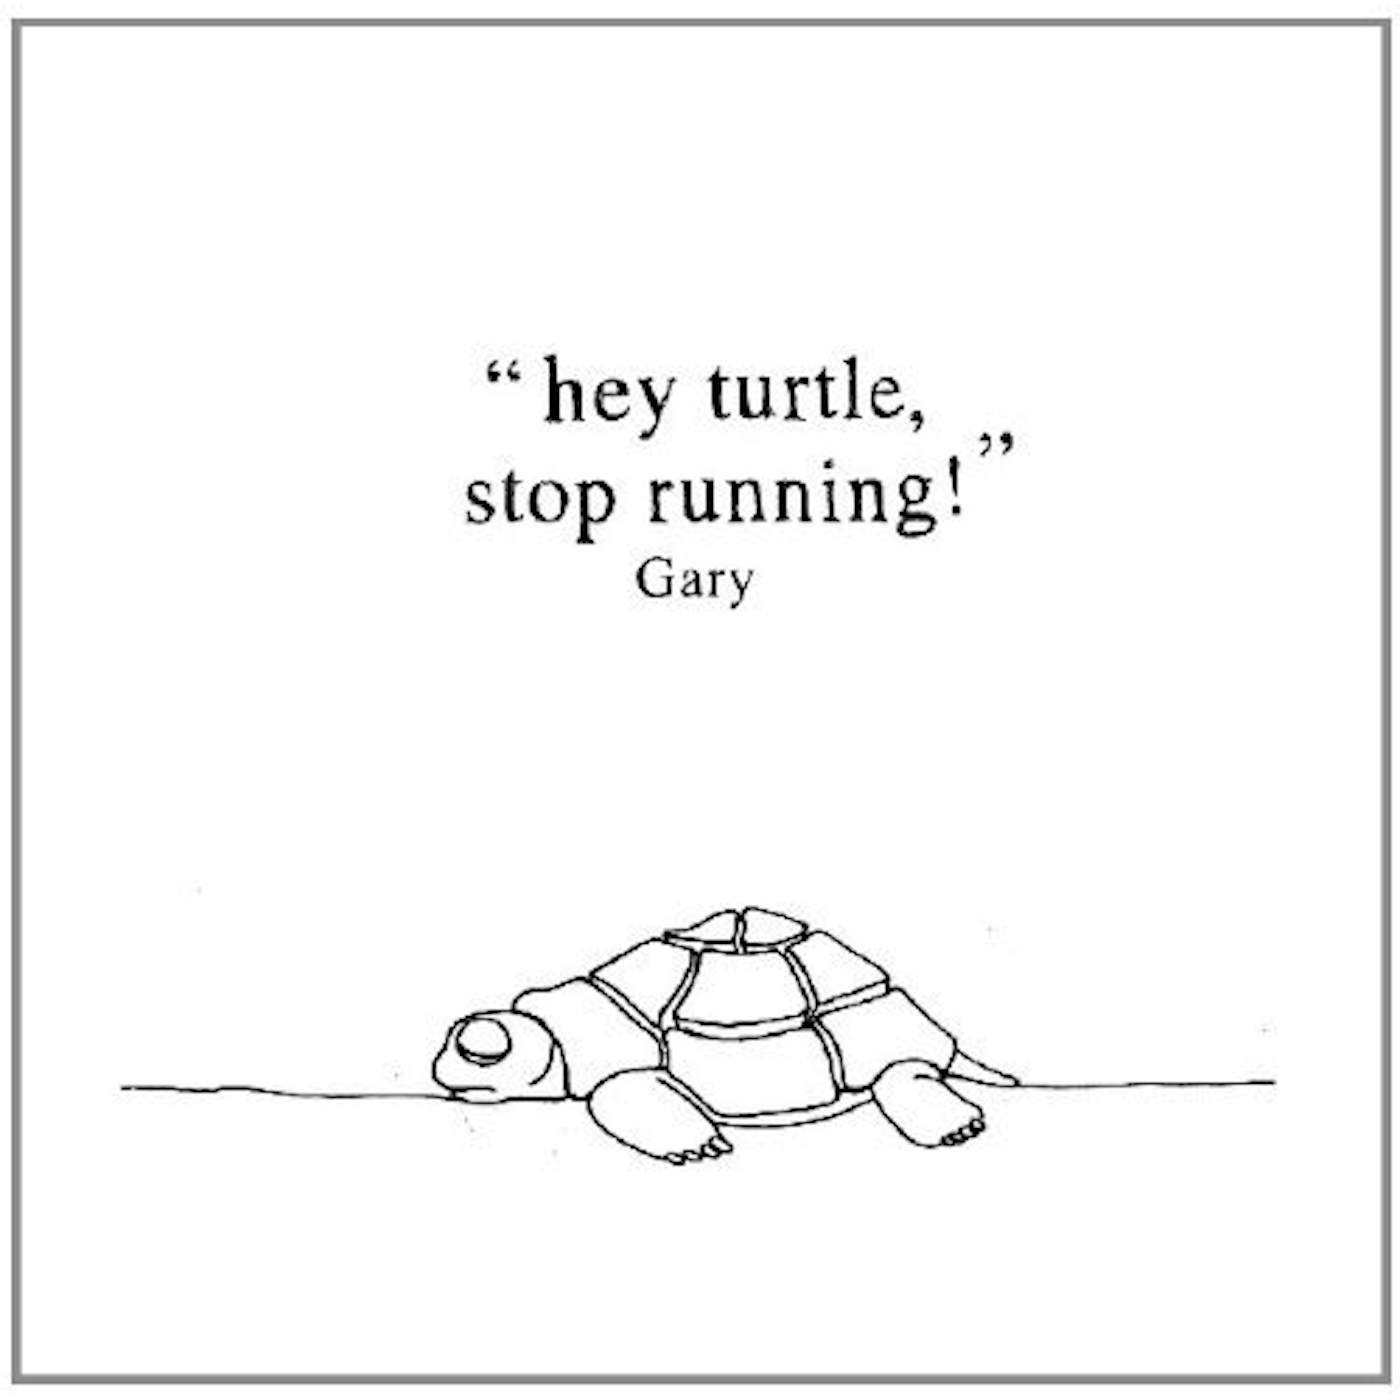 GARY HEY TURTLE STOP RUNNING! Vinyl Record